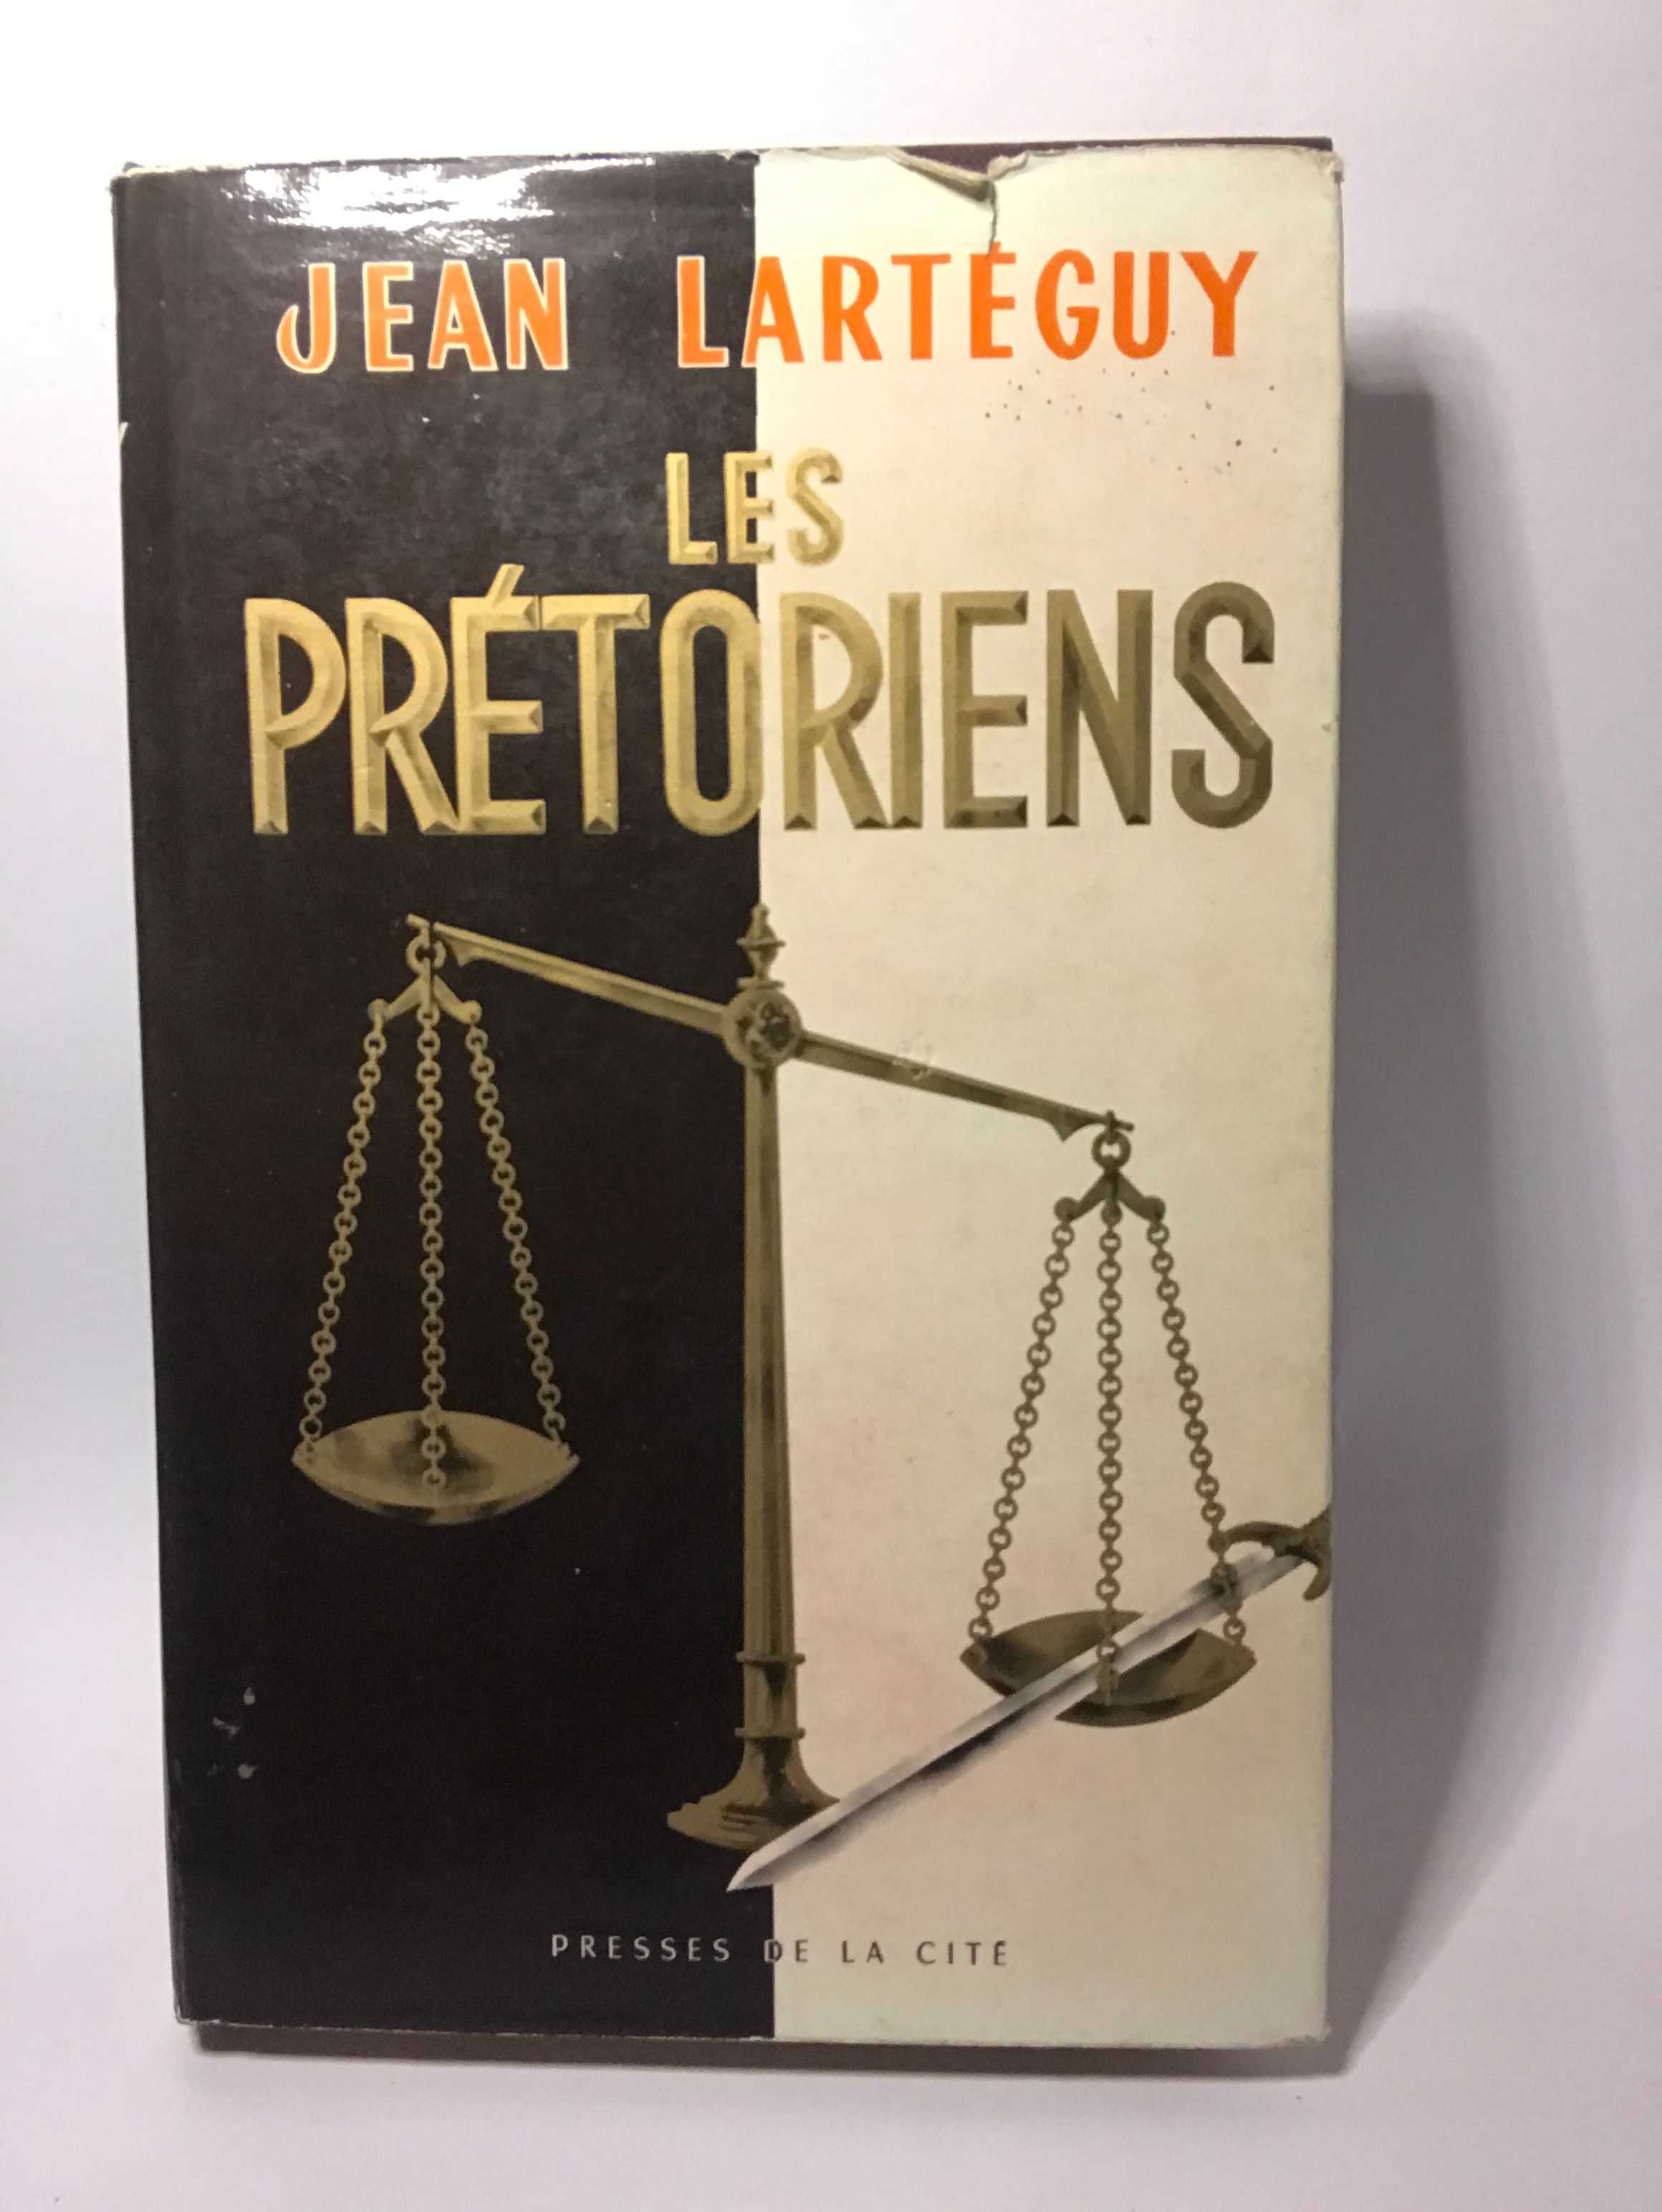 Les Pretoriens - Jean Larteguy